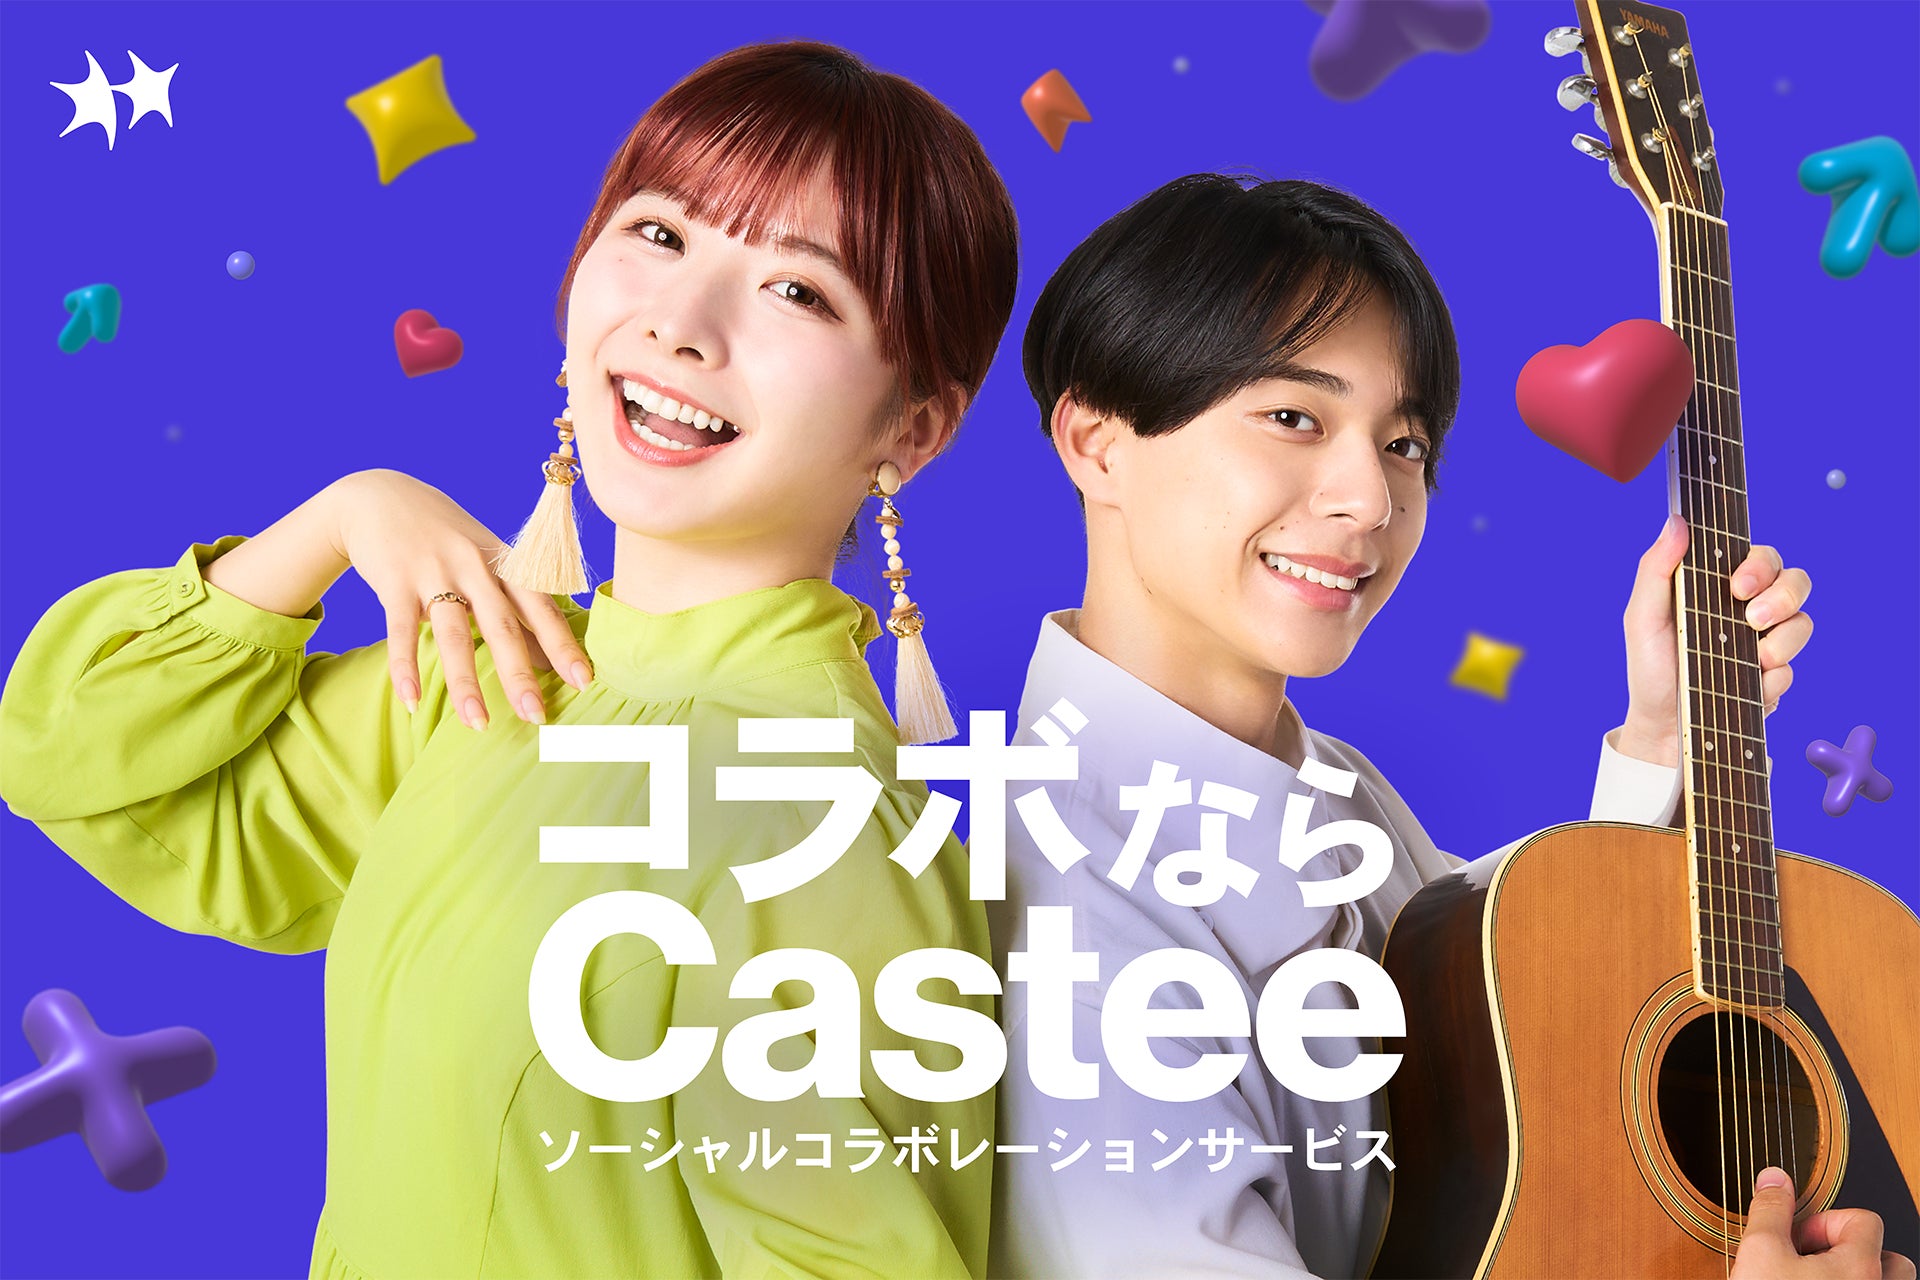 Castee、シード・プレシリーズAで累計約2.5億円を調達　日本初のソーシャルコラボレーションサービス「Castee」β版 提供開始へのサブ画像2